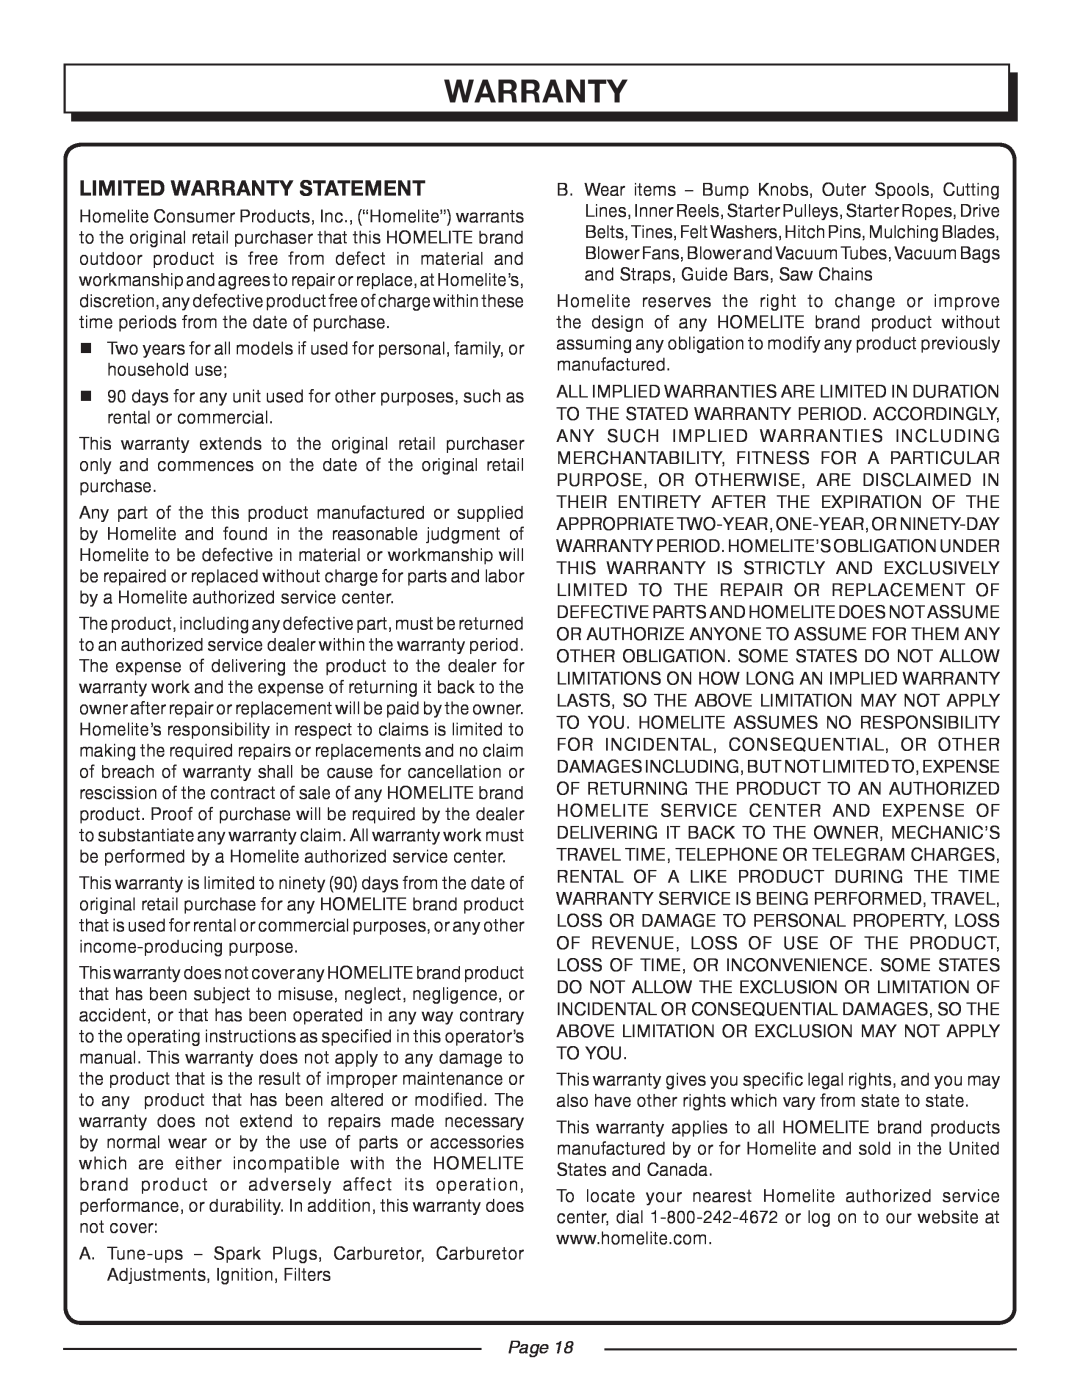 Homelite UT21947, UT21546, UT21506, UT21907 manual Limited Warranty Statement, Page 